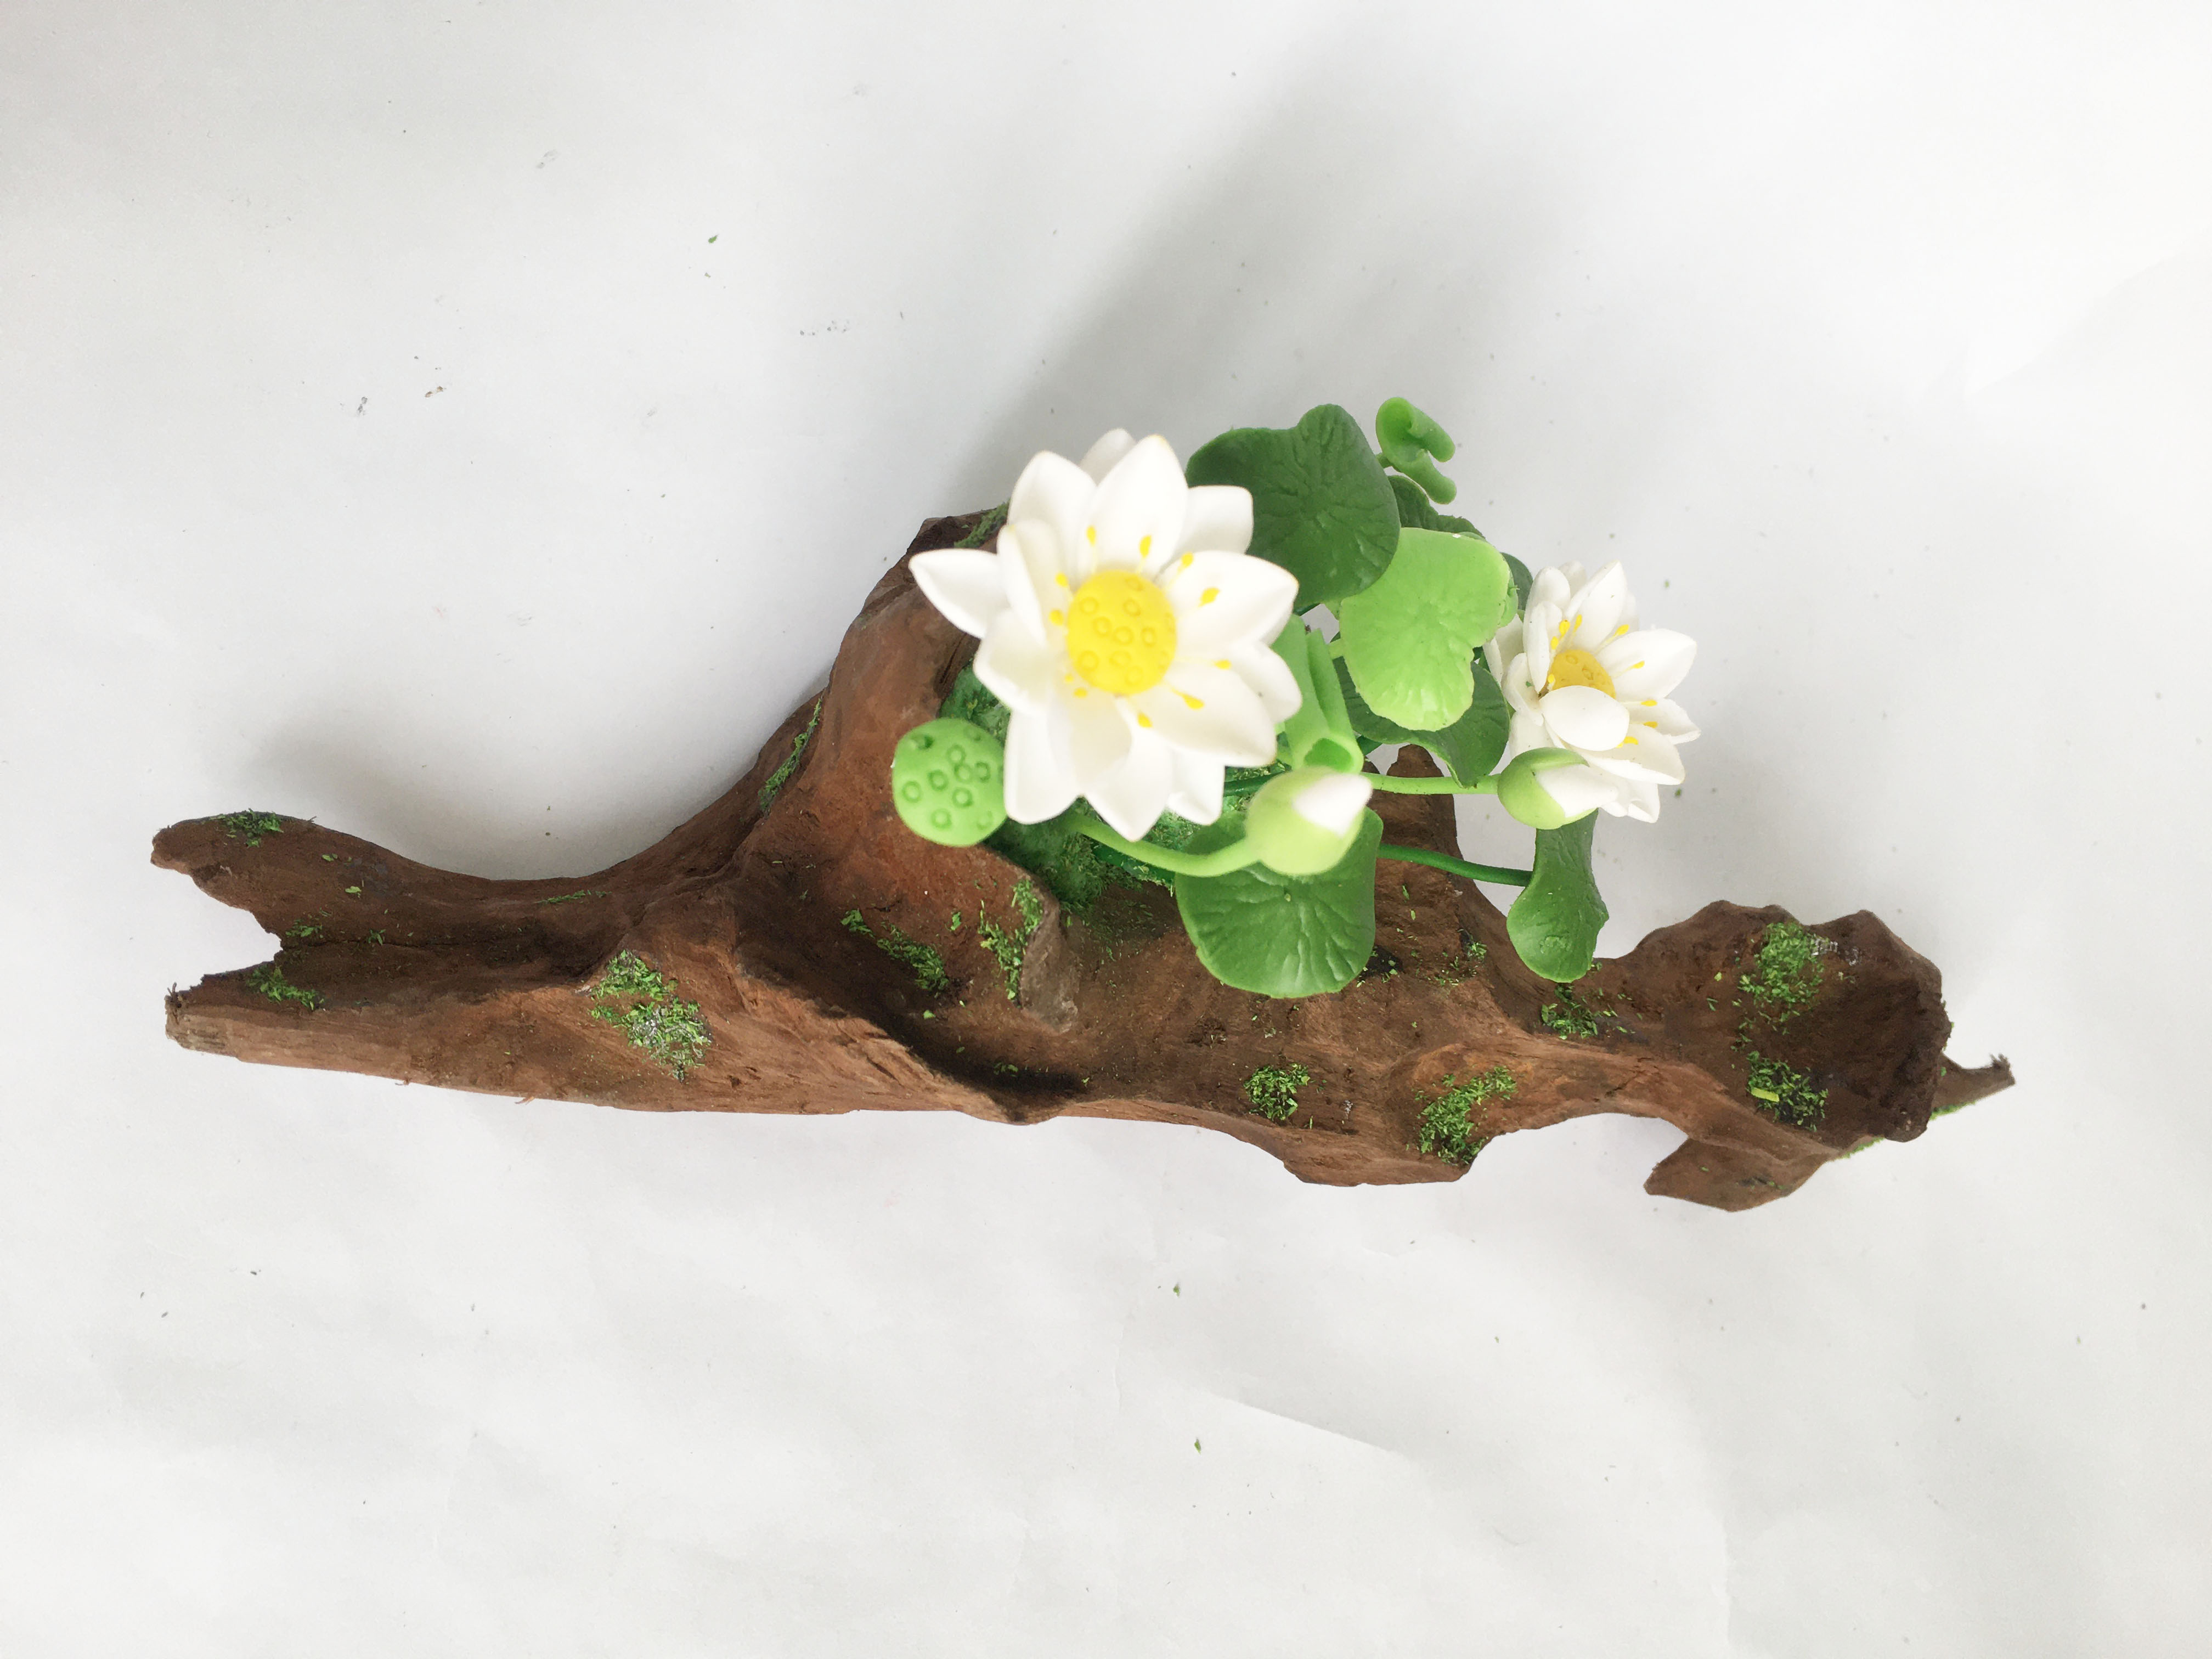 Lũa gỗ hình dáng tự nhiên kết hợp Hoa sen đất sét mini (2 bụi sen trắng) - Quà tặng trang trí handmade (20x10x10cm)